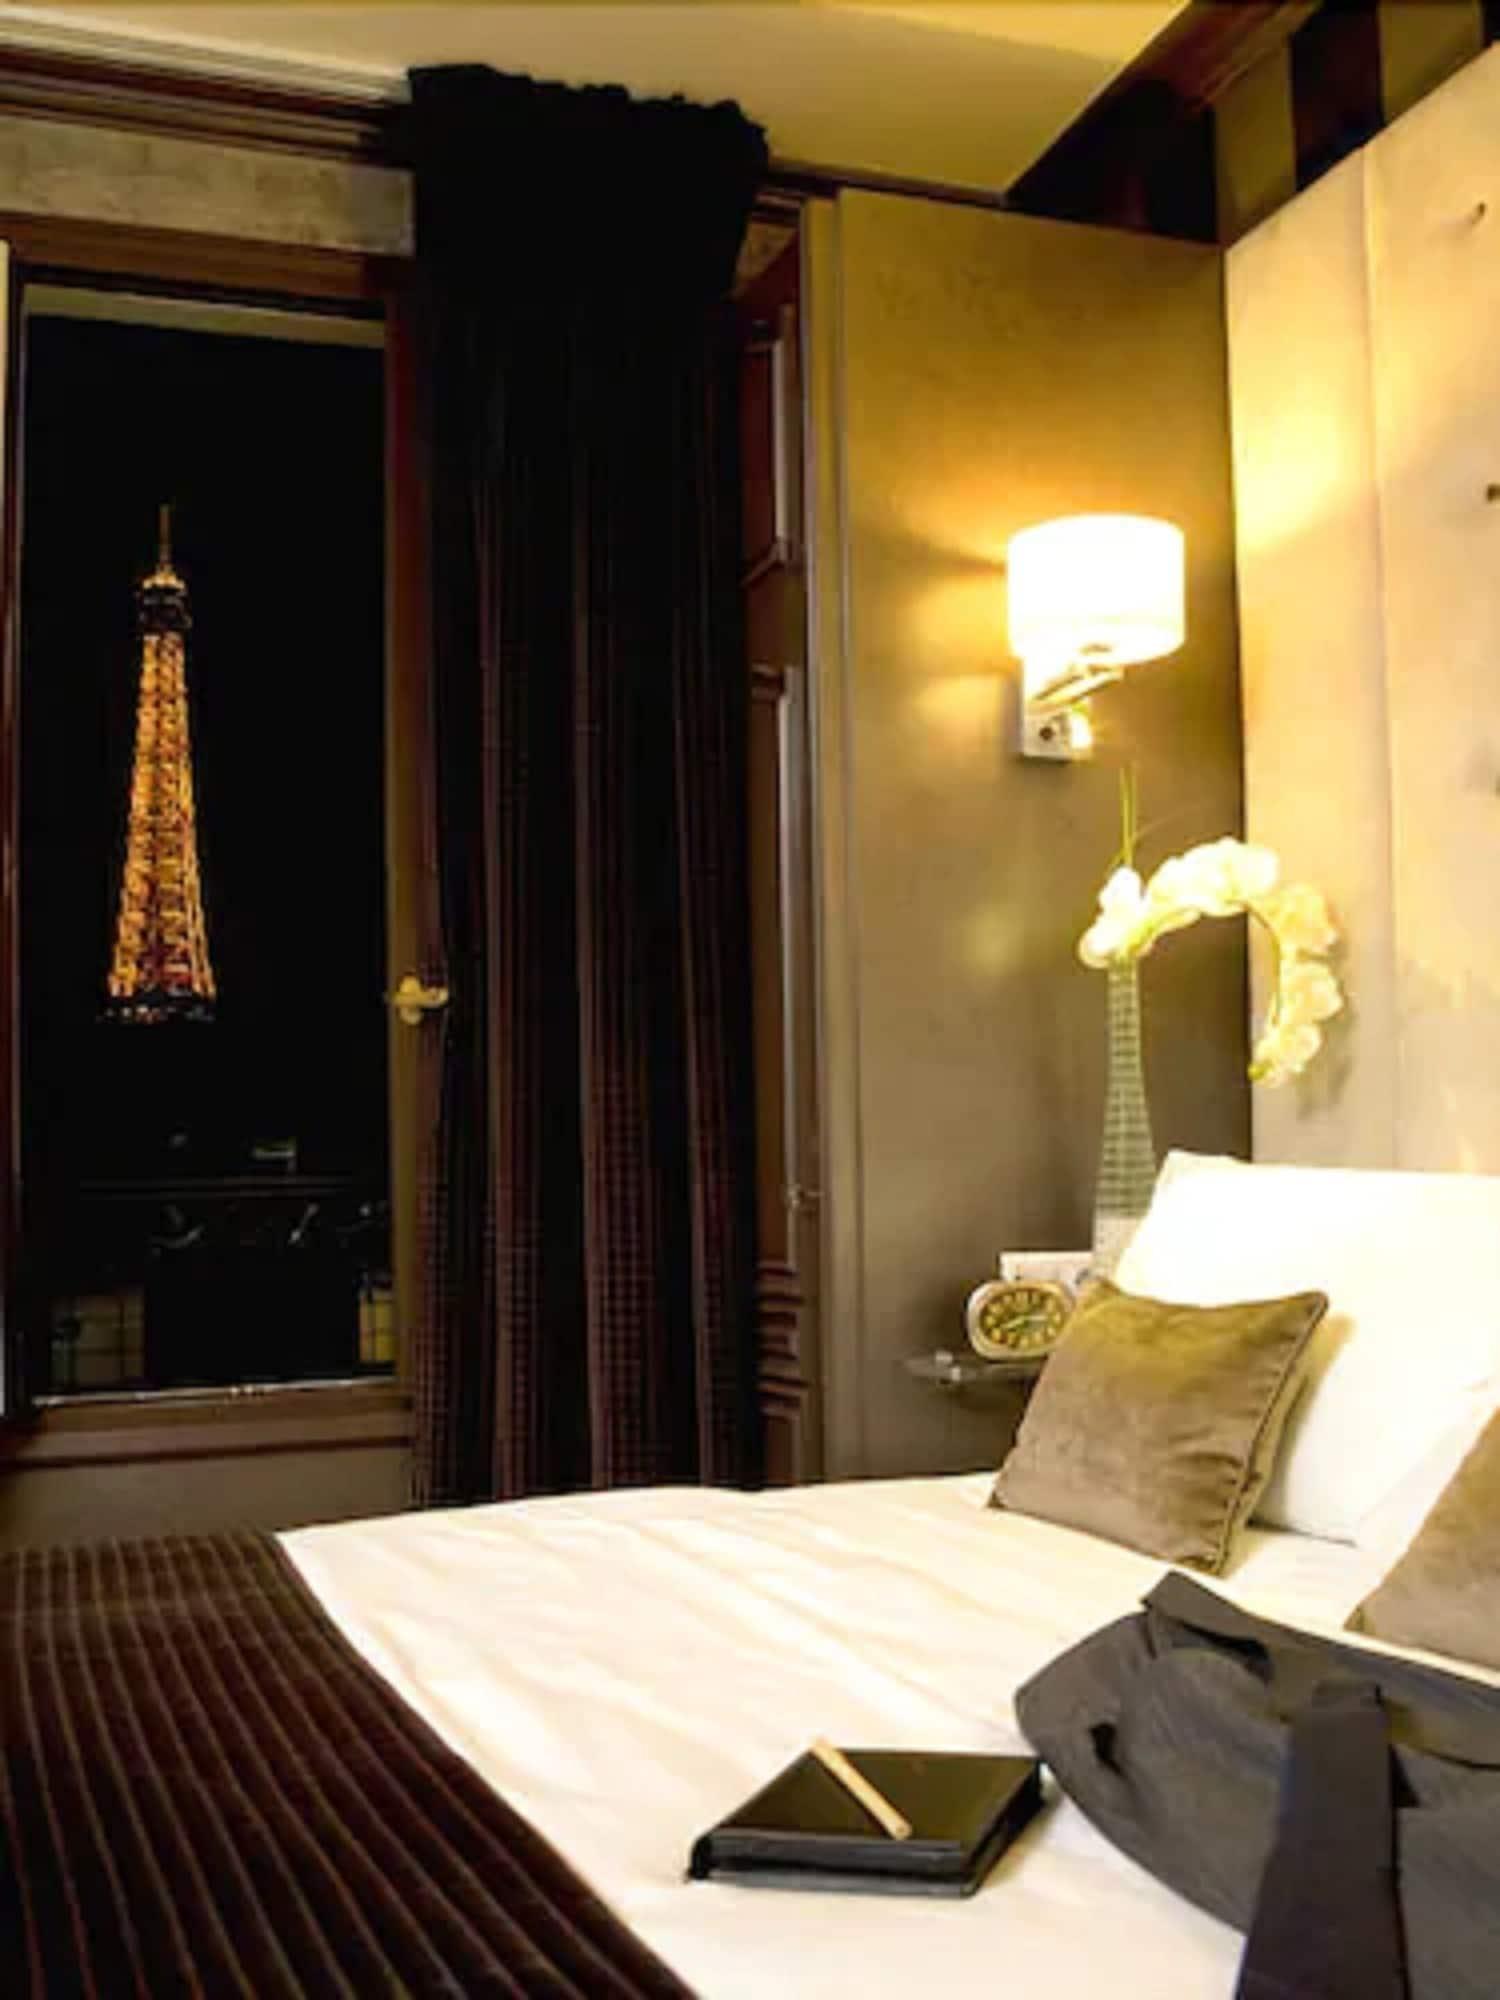 埃菲尔托卡德奥酒店 巴黎 外观 照片